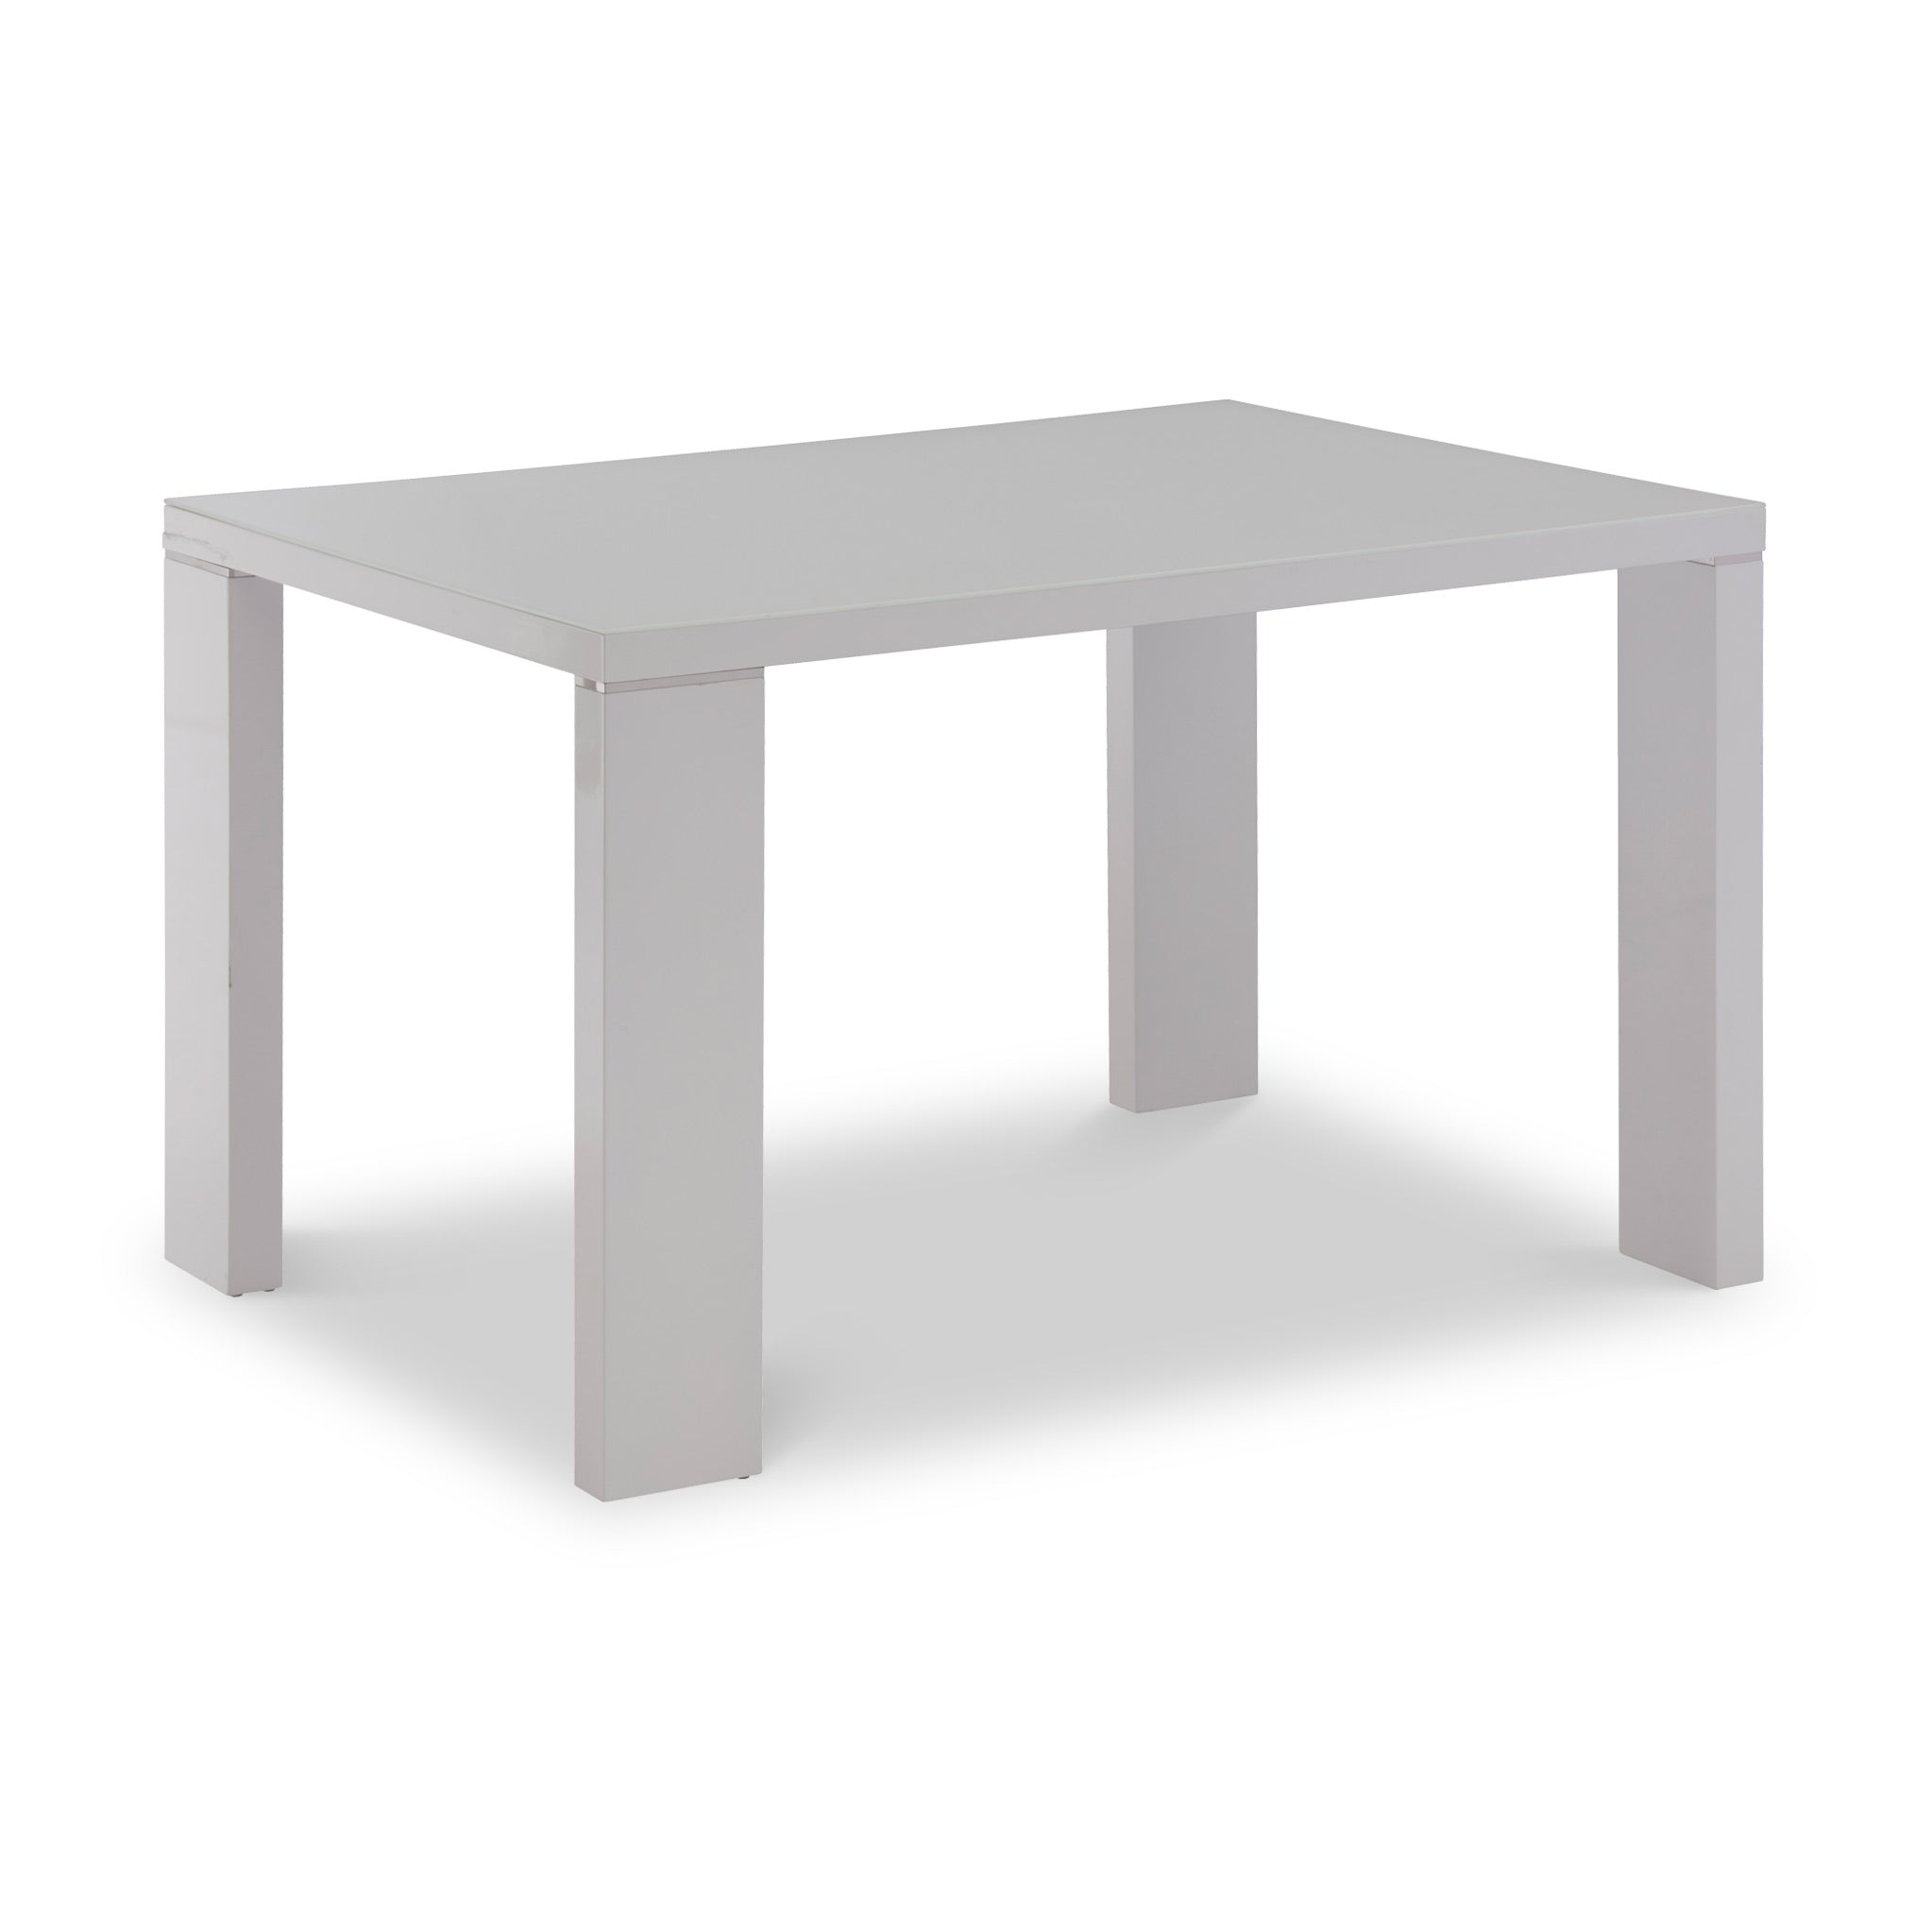 Jackson White Gloss Rectangular Dining Table For 4 6 120cm 150cm